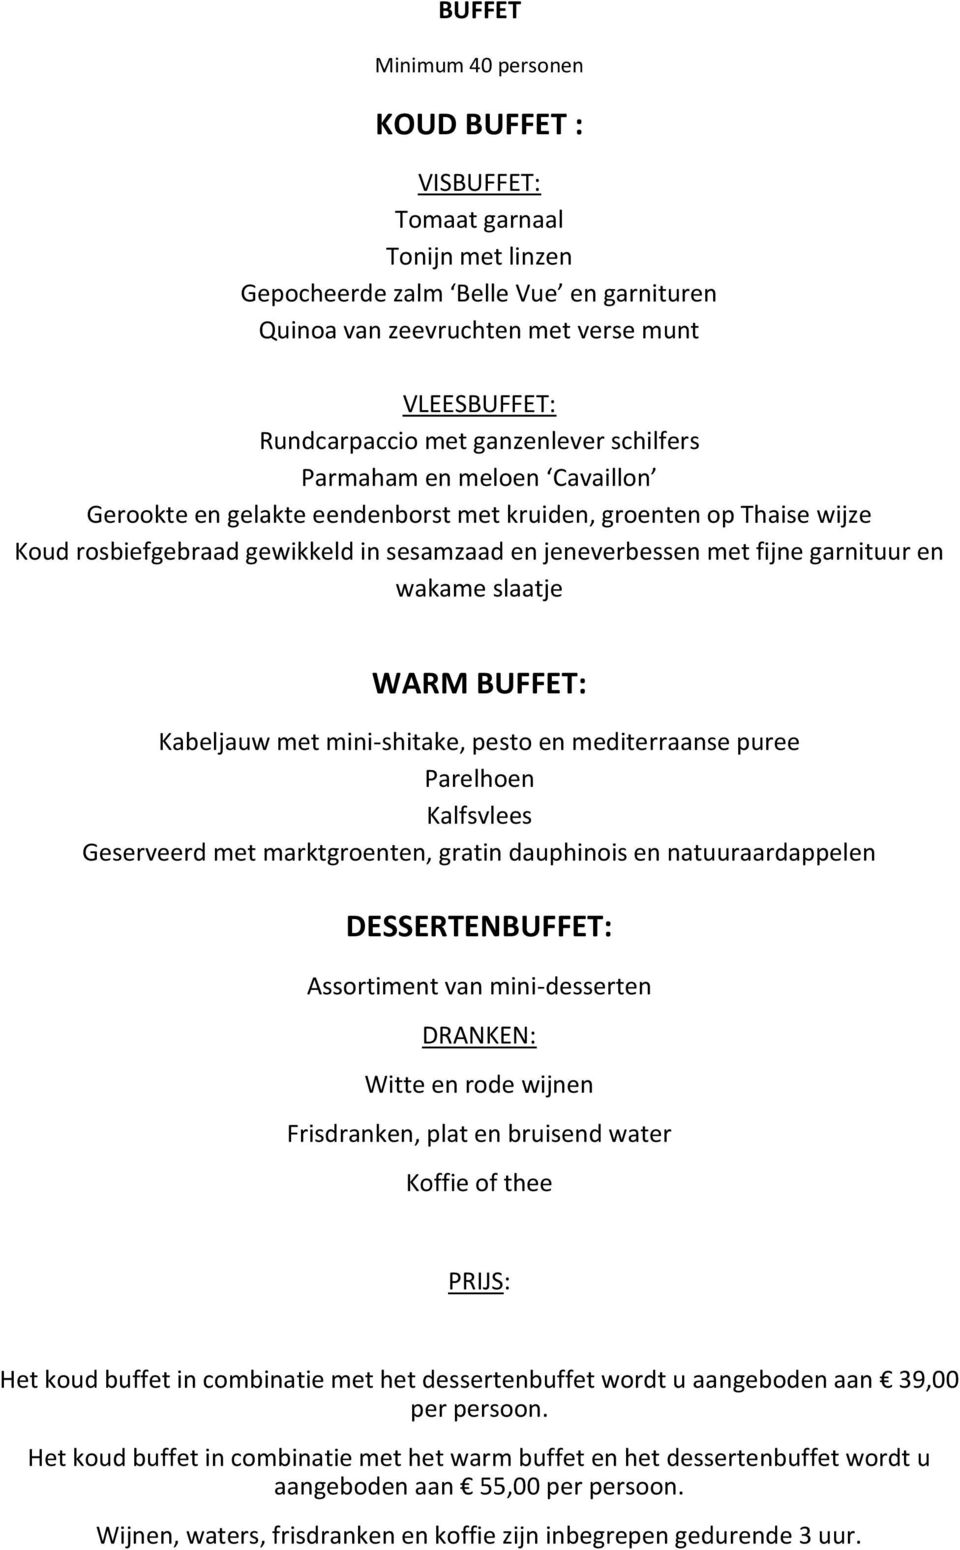 garnituur en wakame slaatje WARM BUFFET: Kabeljauw met mini-shitake, pesto en mediterraanse puree Parelhoen Kalfsvlees Geserveerd met marktgroenten, gratin dauphinois en natuuraardappelen